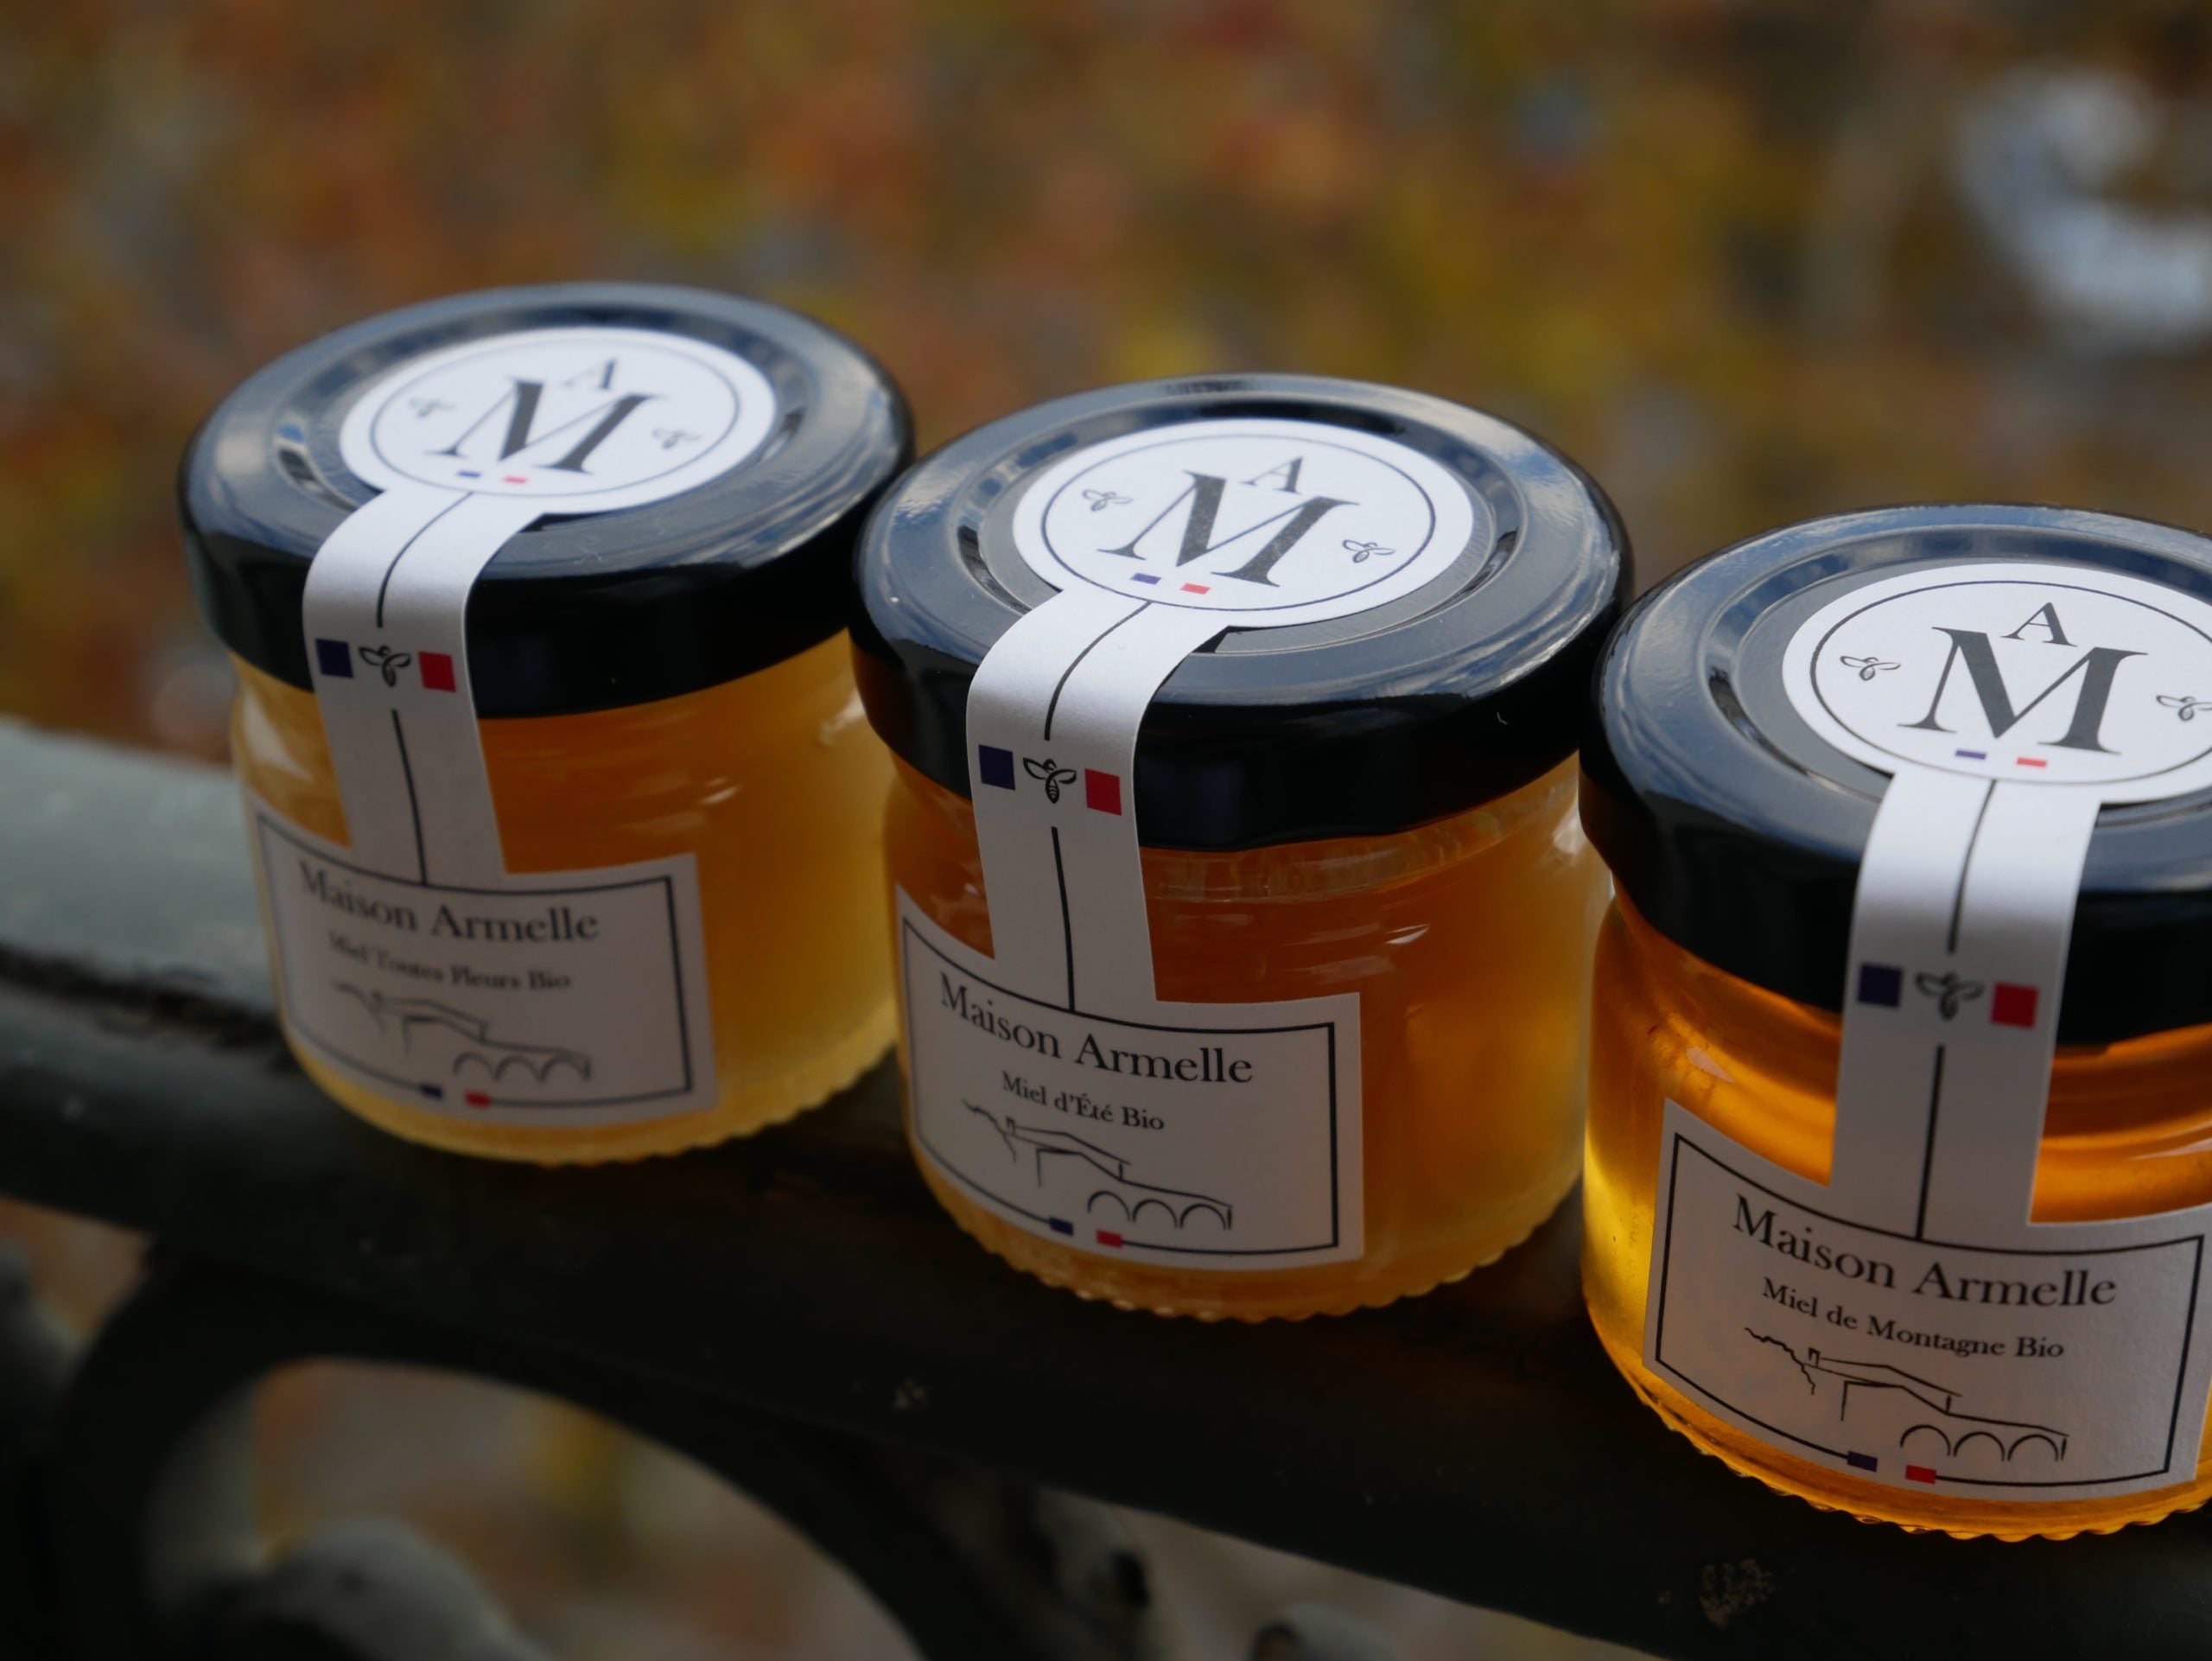 Coffret découverte de 6 miels et cuillère à miel - Maison Sauveterre